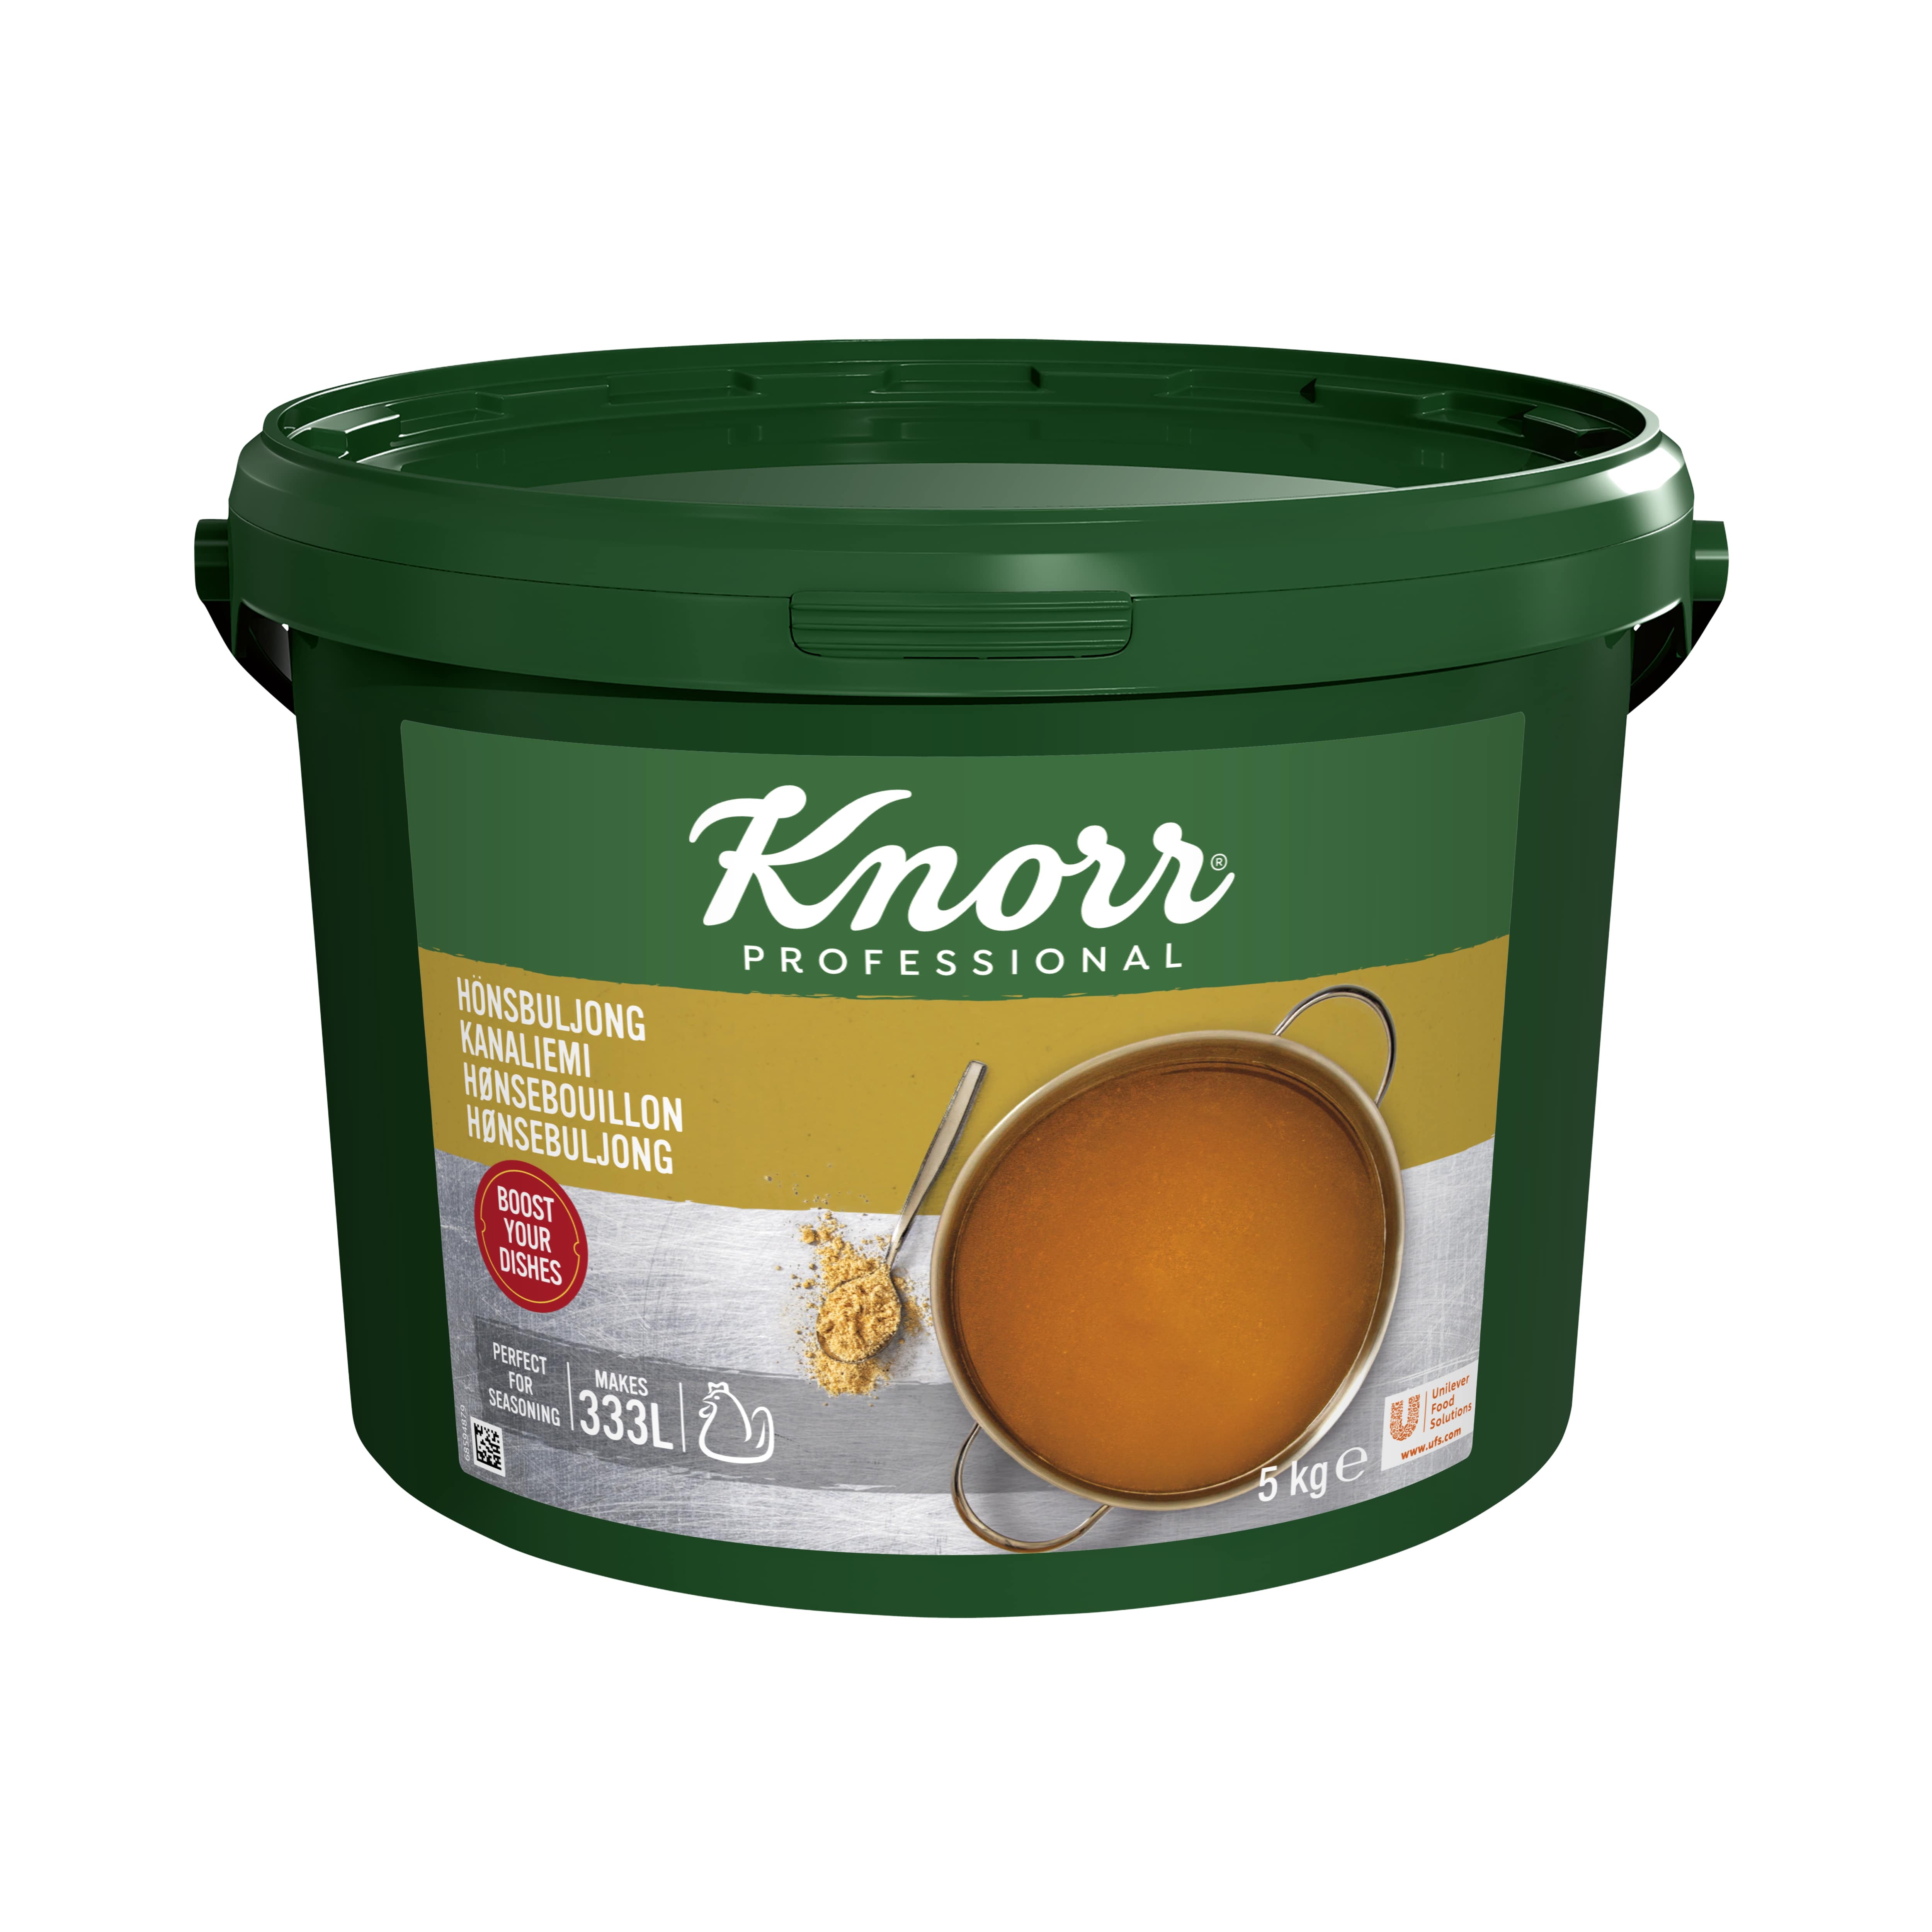 Knorr Kanaliemi 5 kg / 333 L